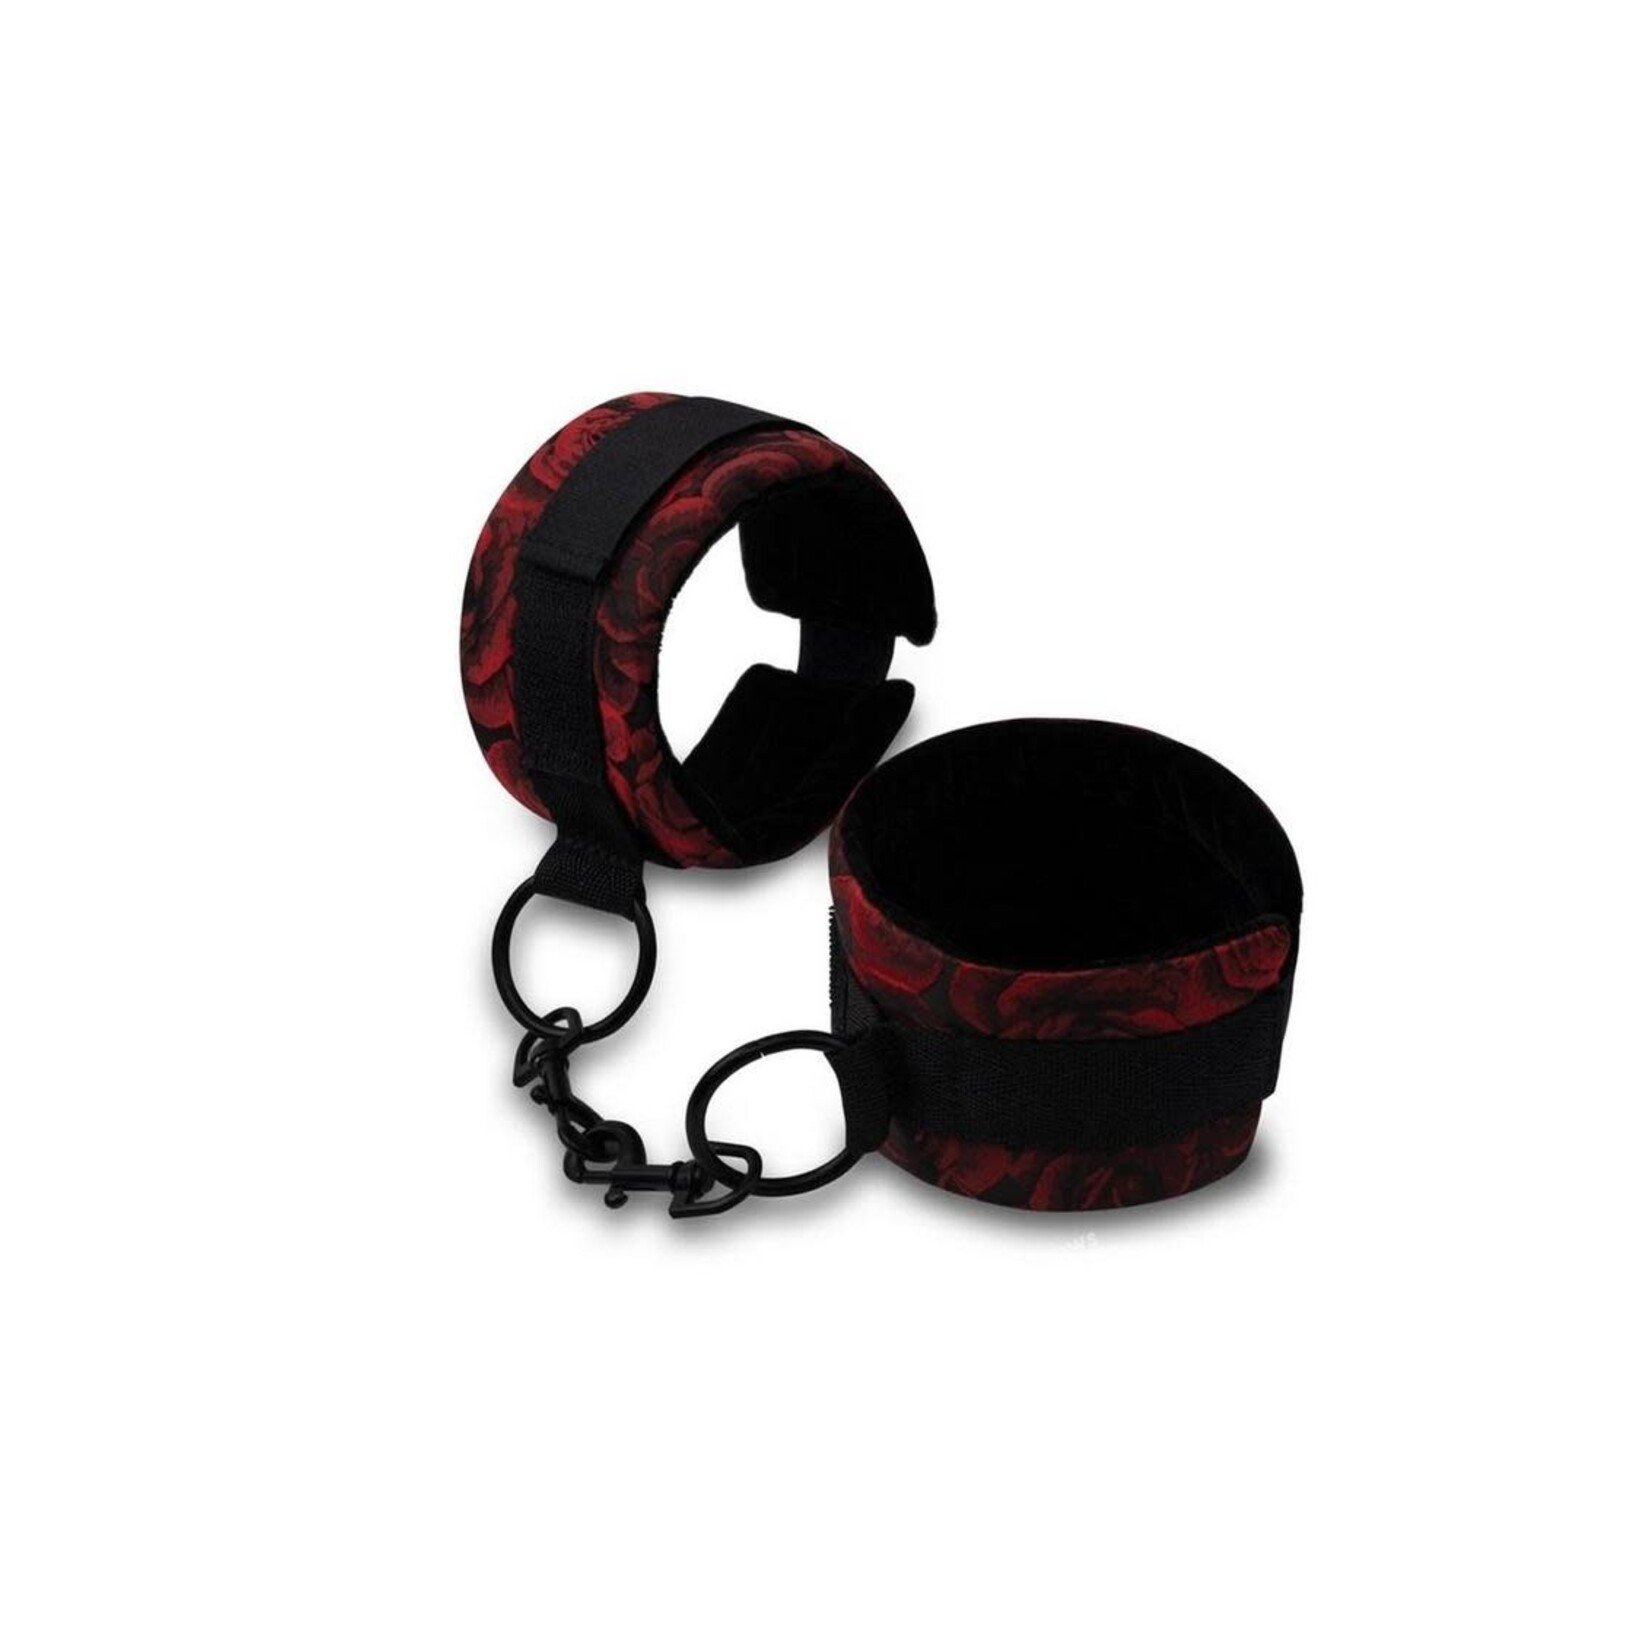 Secret Kisses Rosegasm Cuffs with Satin Blindfold - Red/Black